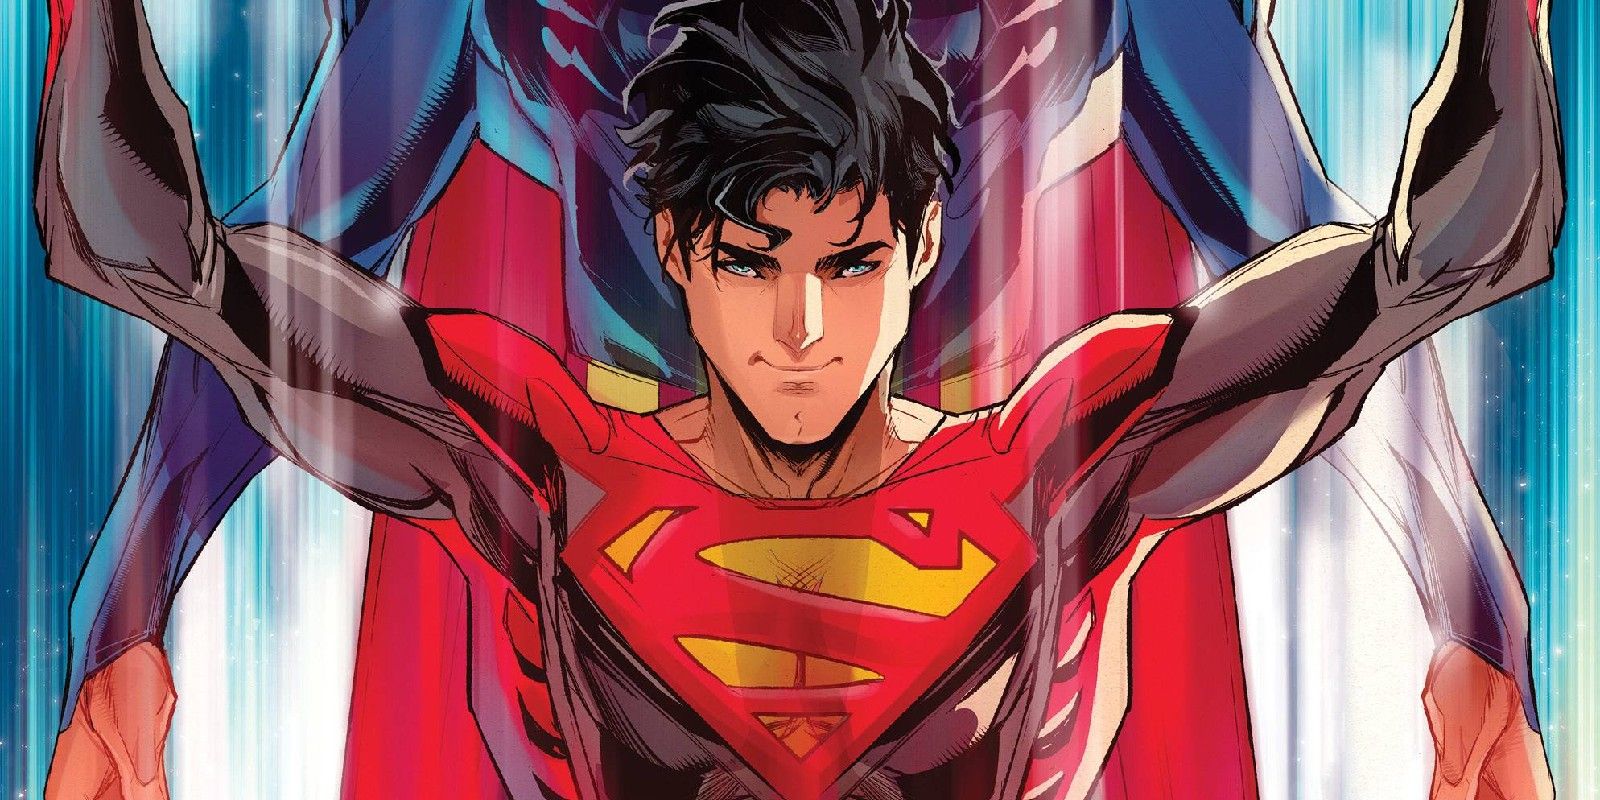 “Superman cambió mi visión del mundo”: el cosplay de Superman es el máximo tributo a la nueva identidad de Jon Kent